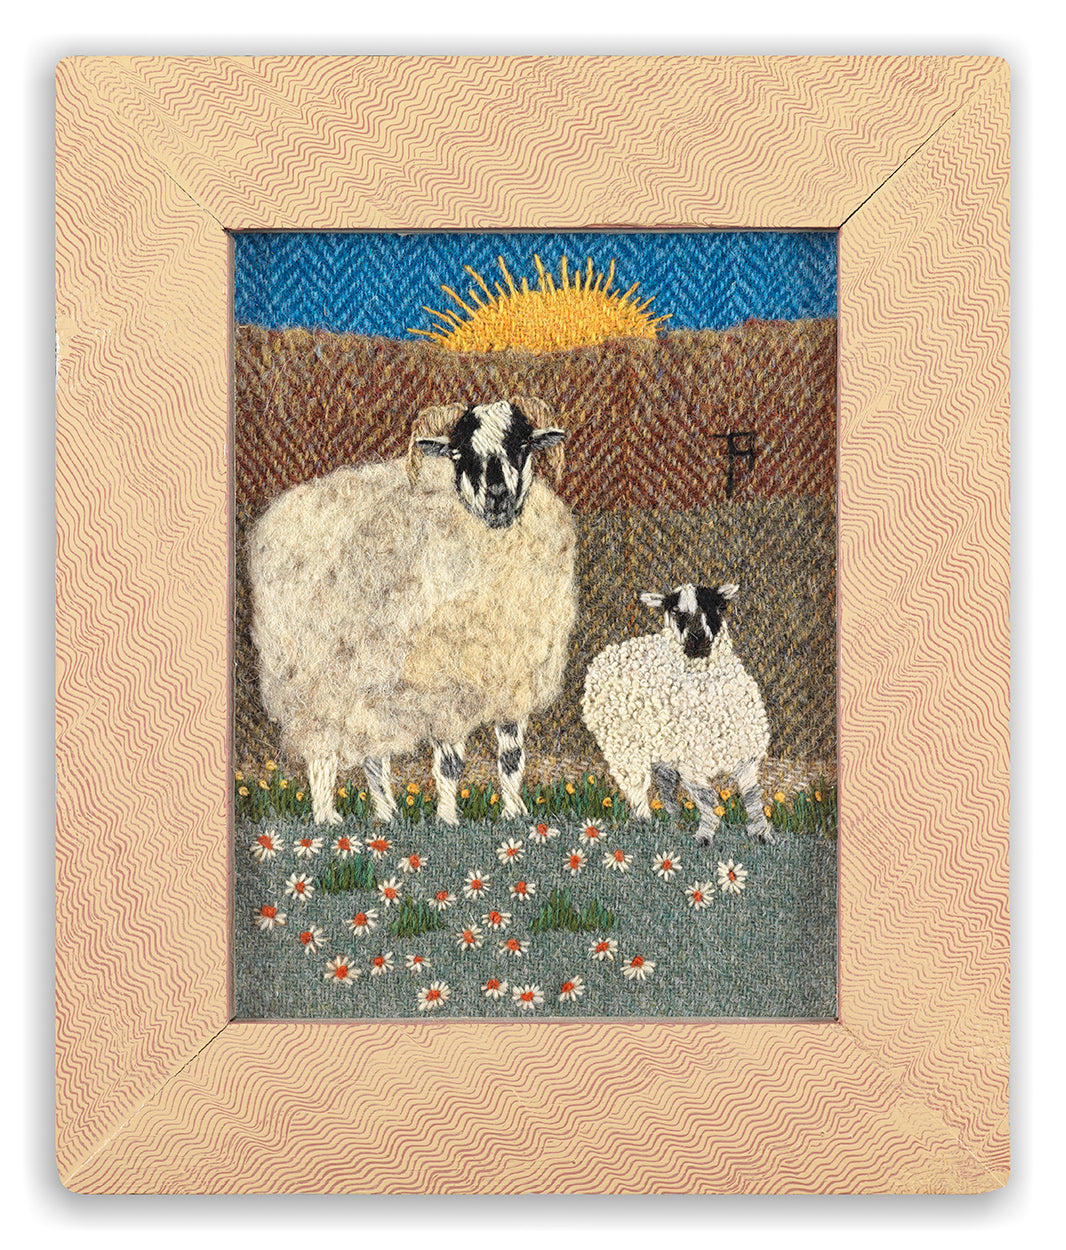 Ewe and Lamb at Sunrise